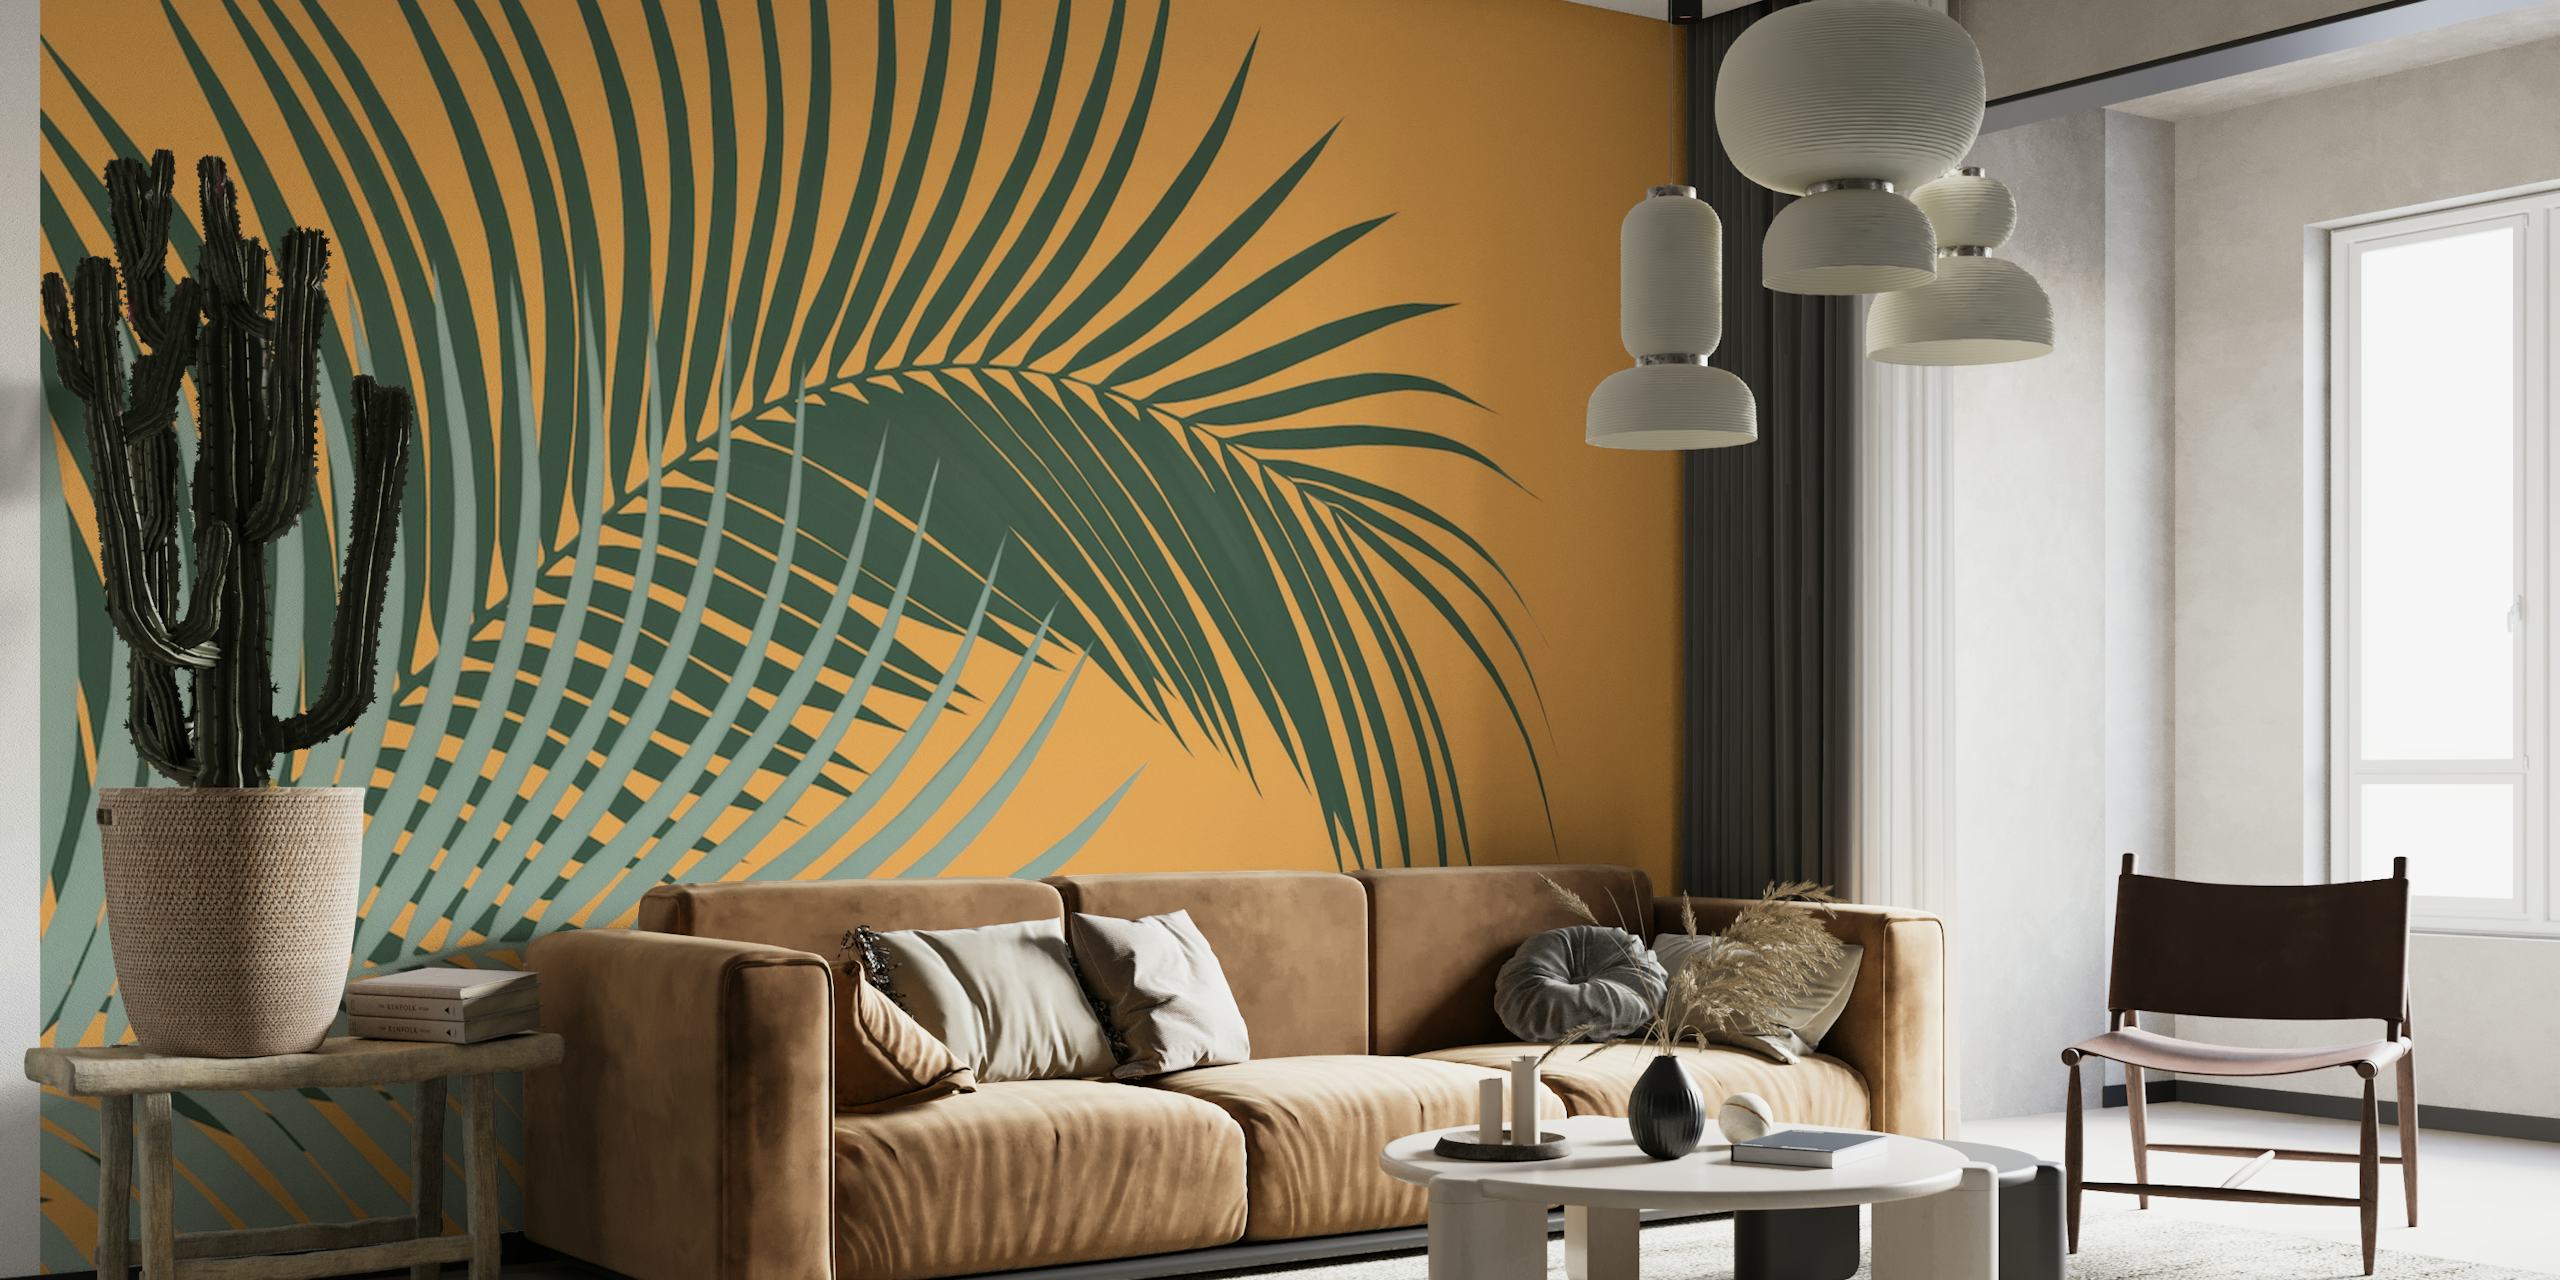 Une fresque murale représentant des feuilles de palmier vertes sur fond orange.